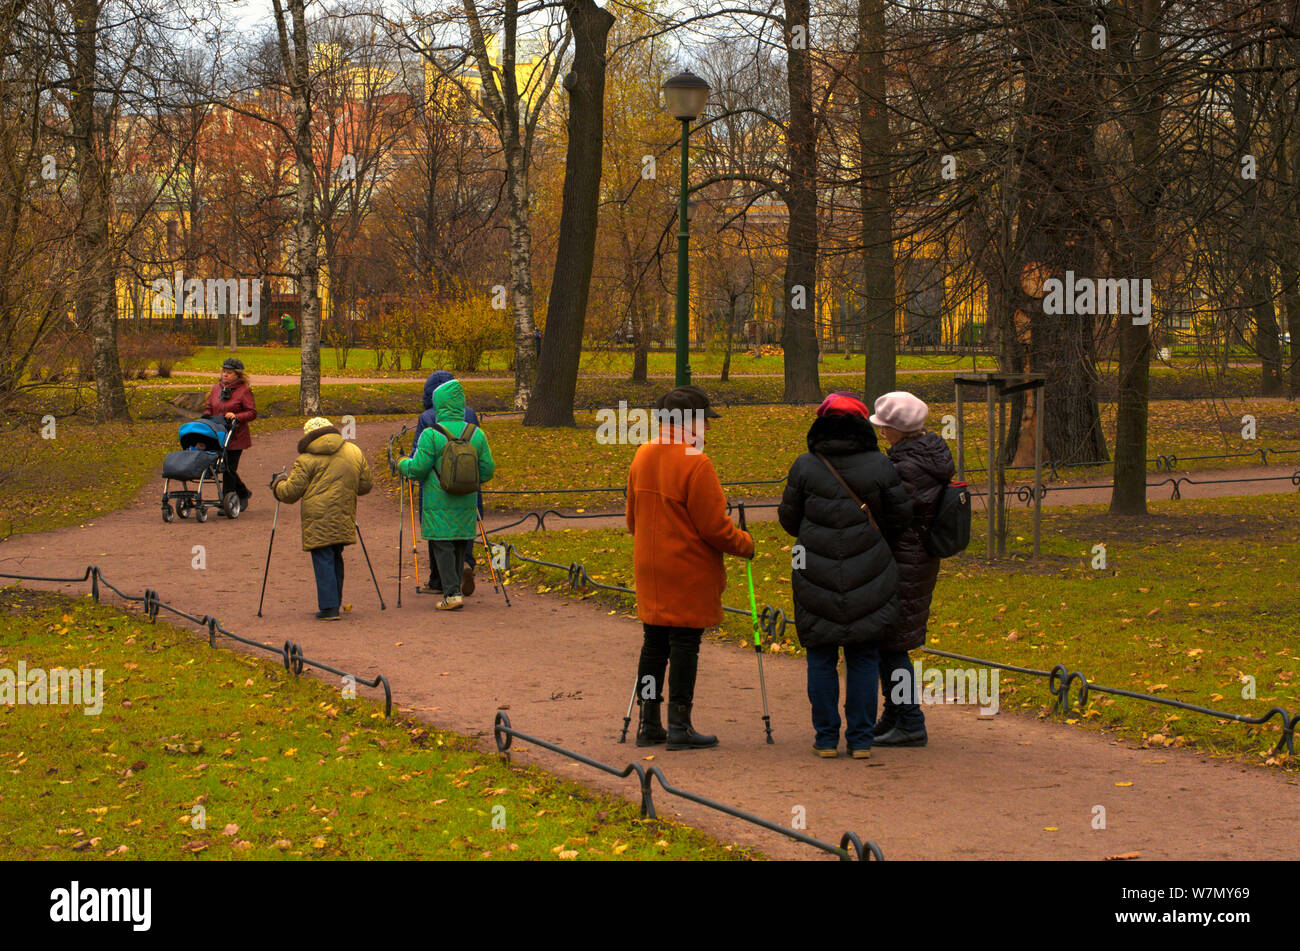 Saint Petersburg, Russie - 16 novembre 2018 : La communauté des aînés engagés dans la marche nordique dans le parc sur un jour nuageux en fin d'automne Banque D'Images